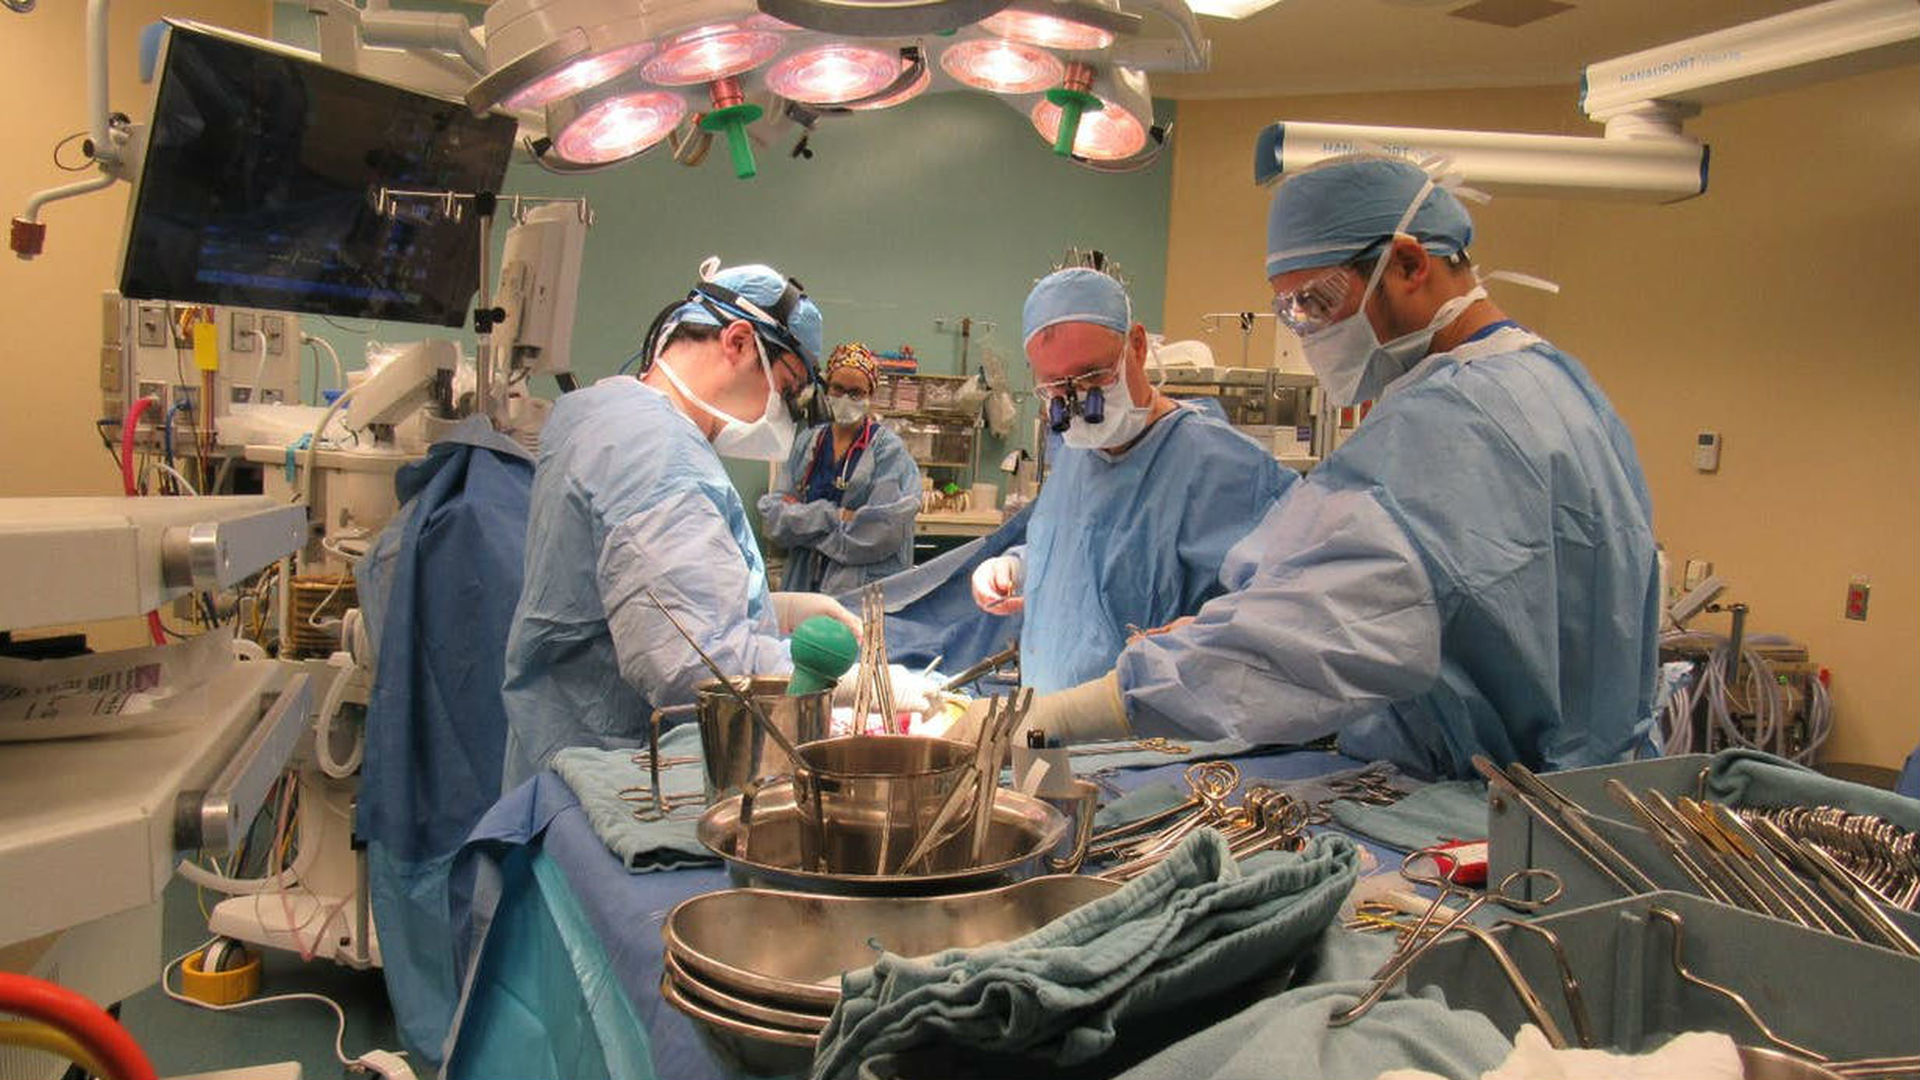 Пересадка органа от донора. Трансплантация органов и тканей. Трансплантология органов и ткани. Хирургическая операция.